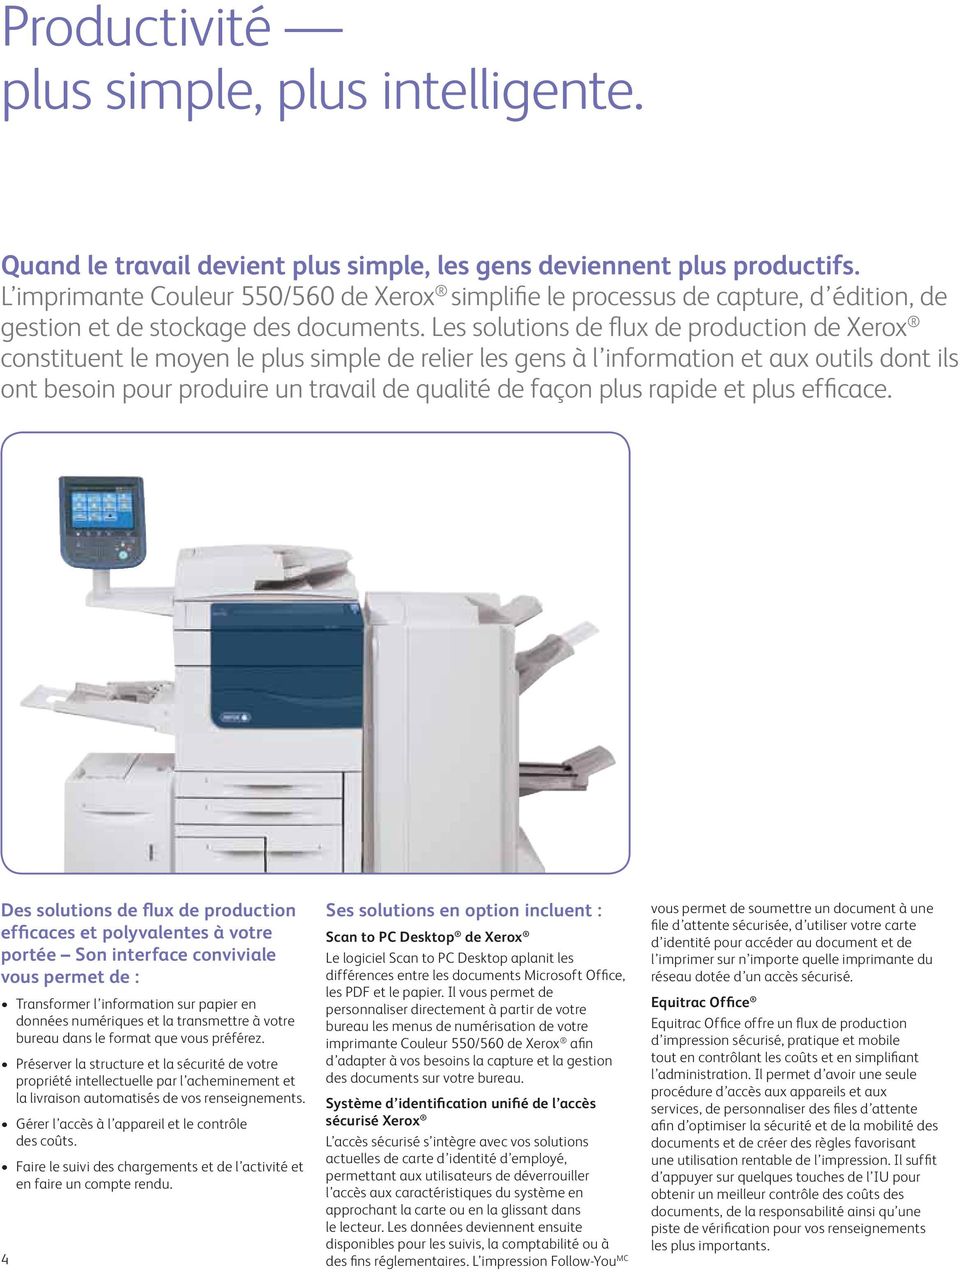 Les solutions de flux de production de Xerox constituent le moyen le plus simple de relier les gens à l information et aux outils dont ils ont besoin pour produire un travail de qualité de façon plus